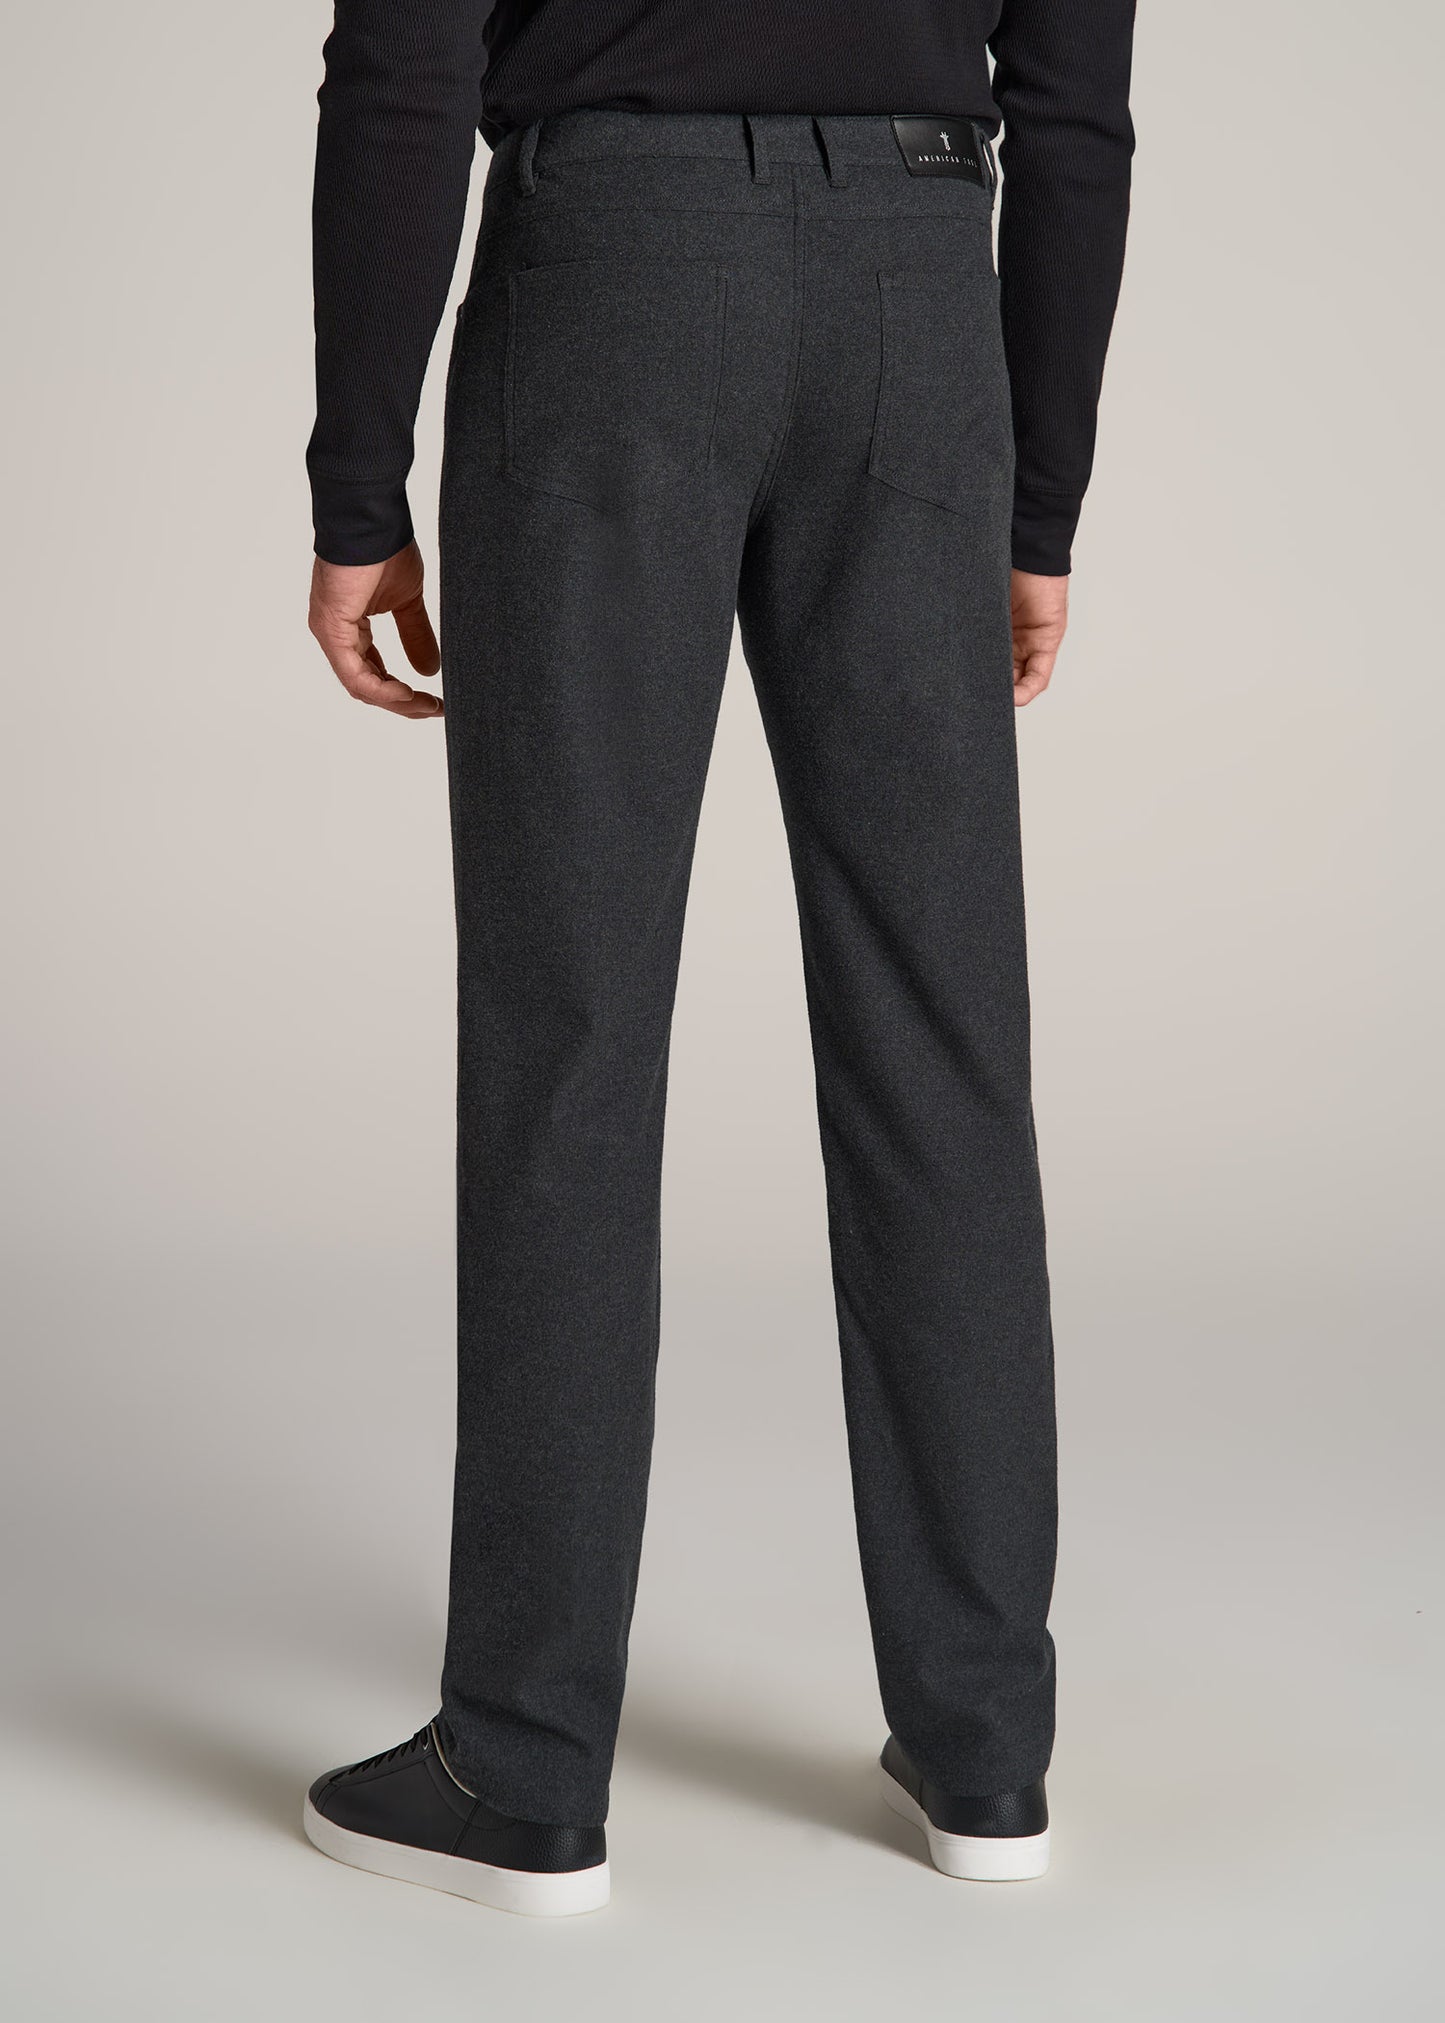 Men's Casual Dark Grey Cotton Pants - Temu